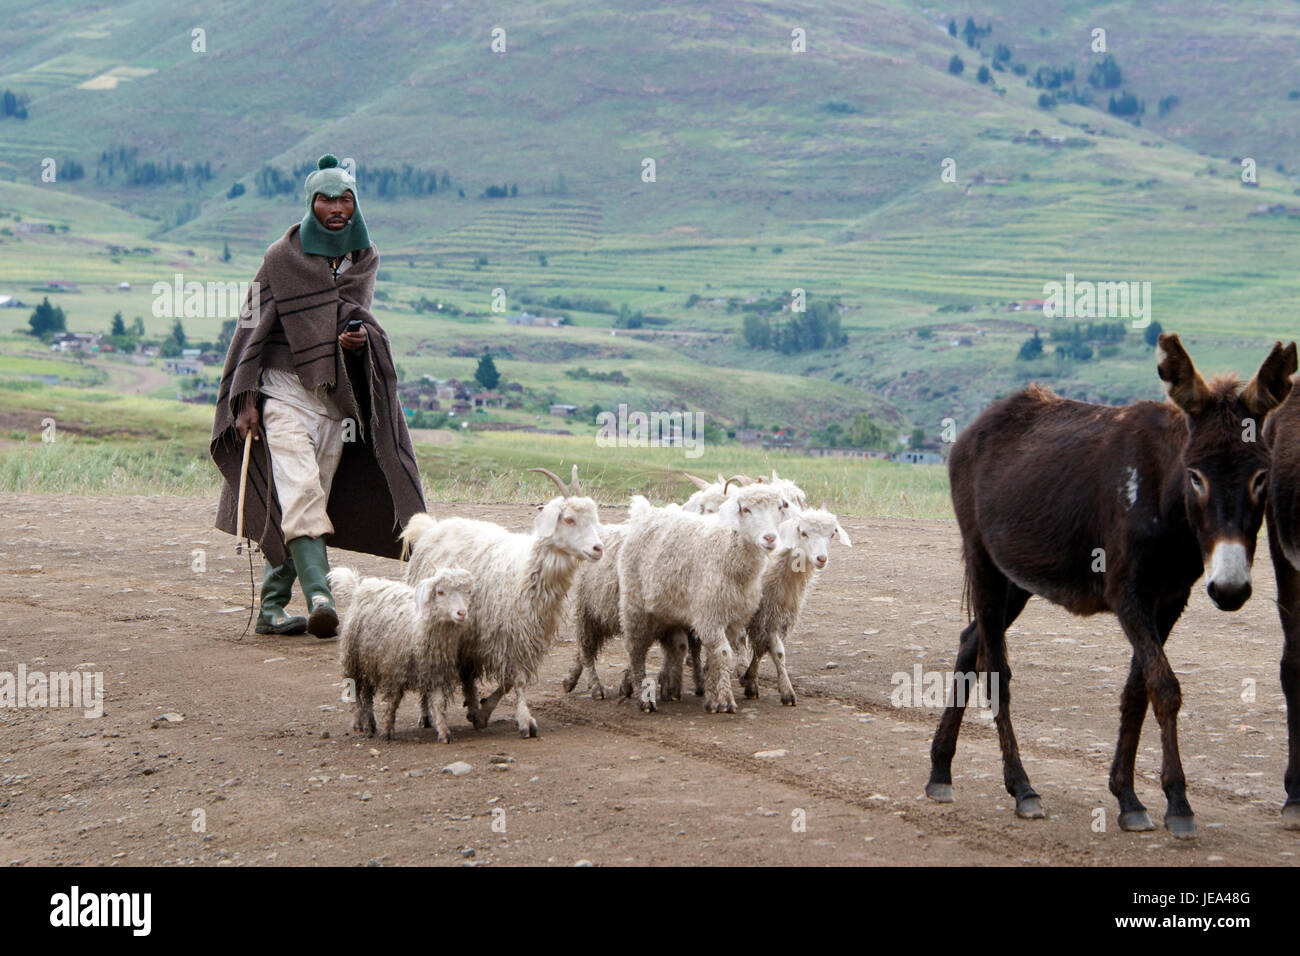 Berger avec moutons et chèvres âne District Lesotho Thaba-Tseka Afrique Australe Banque D'Images